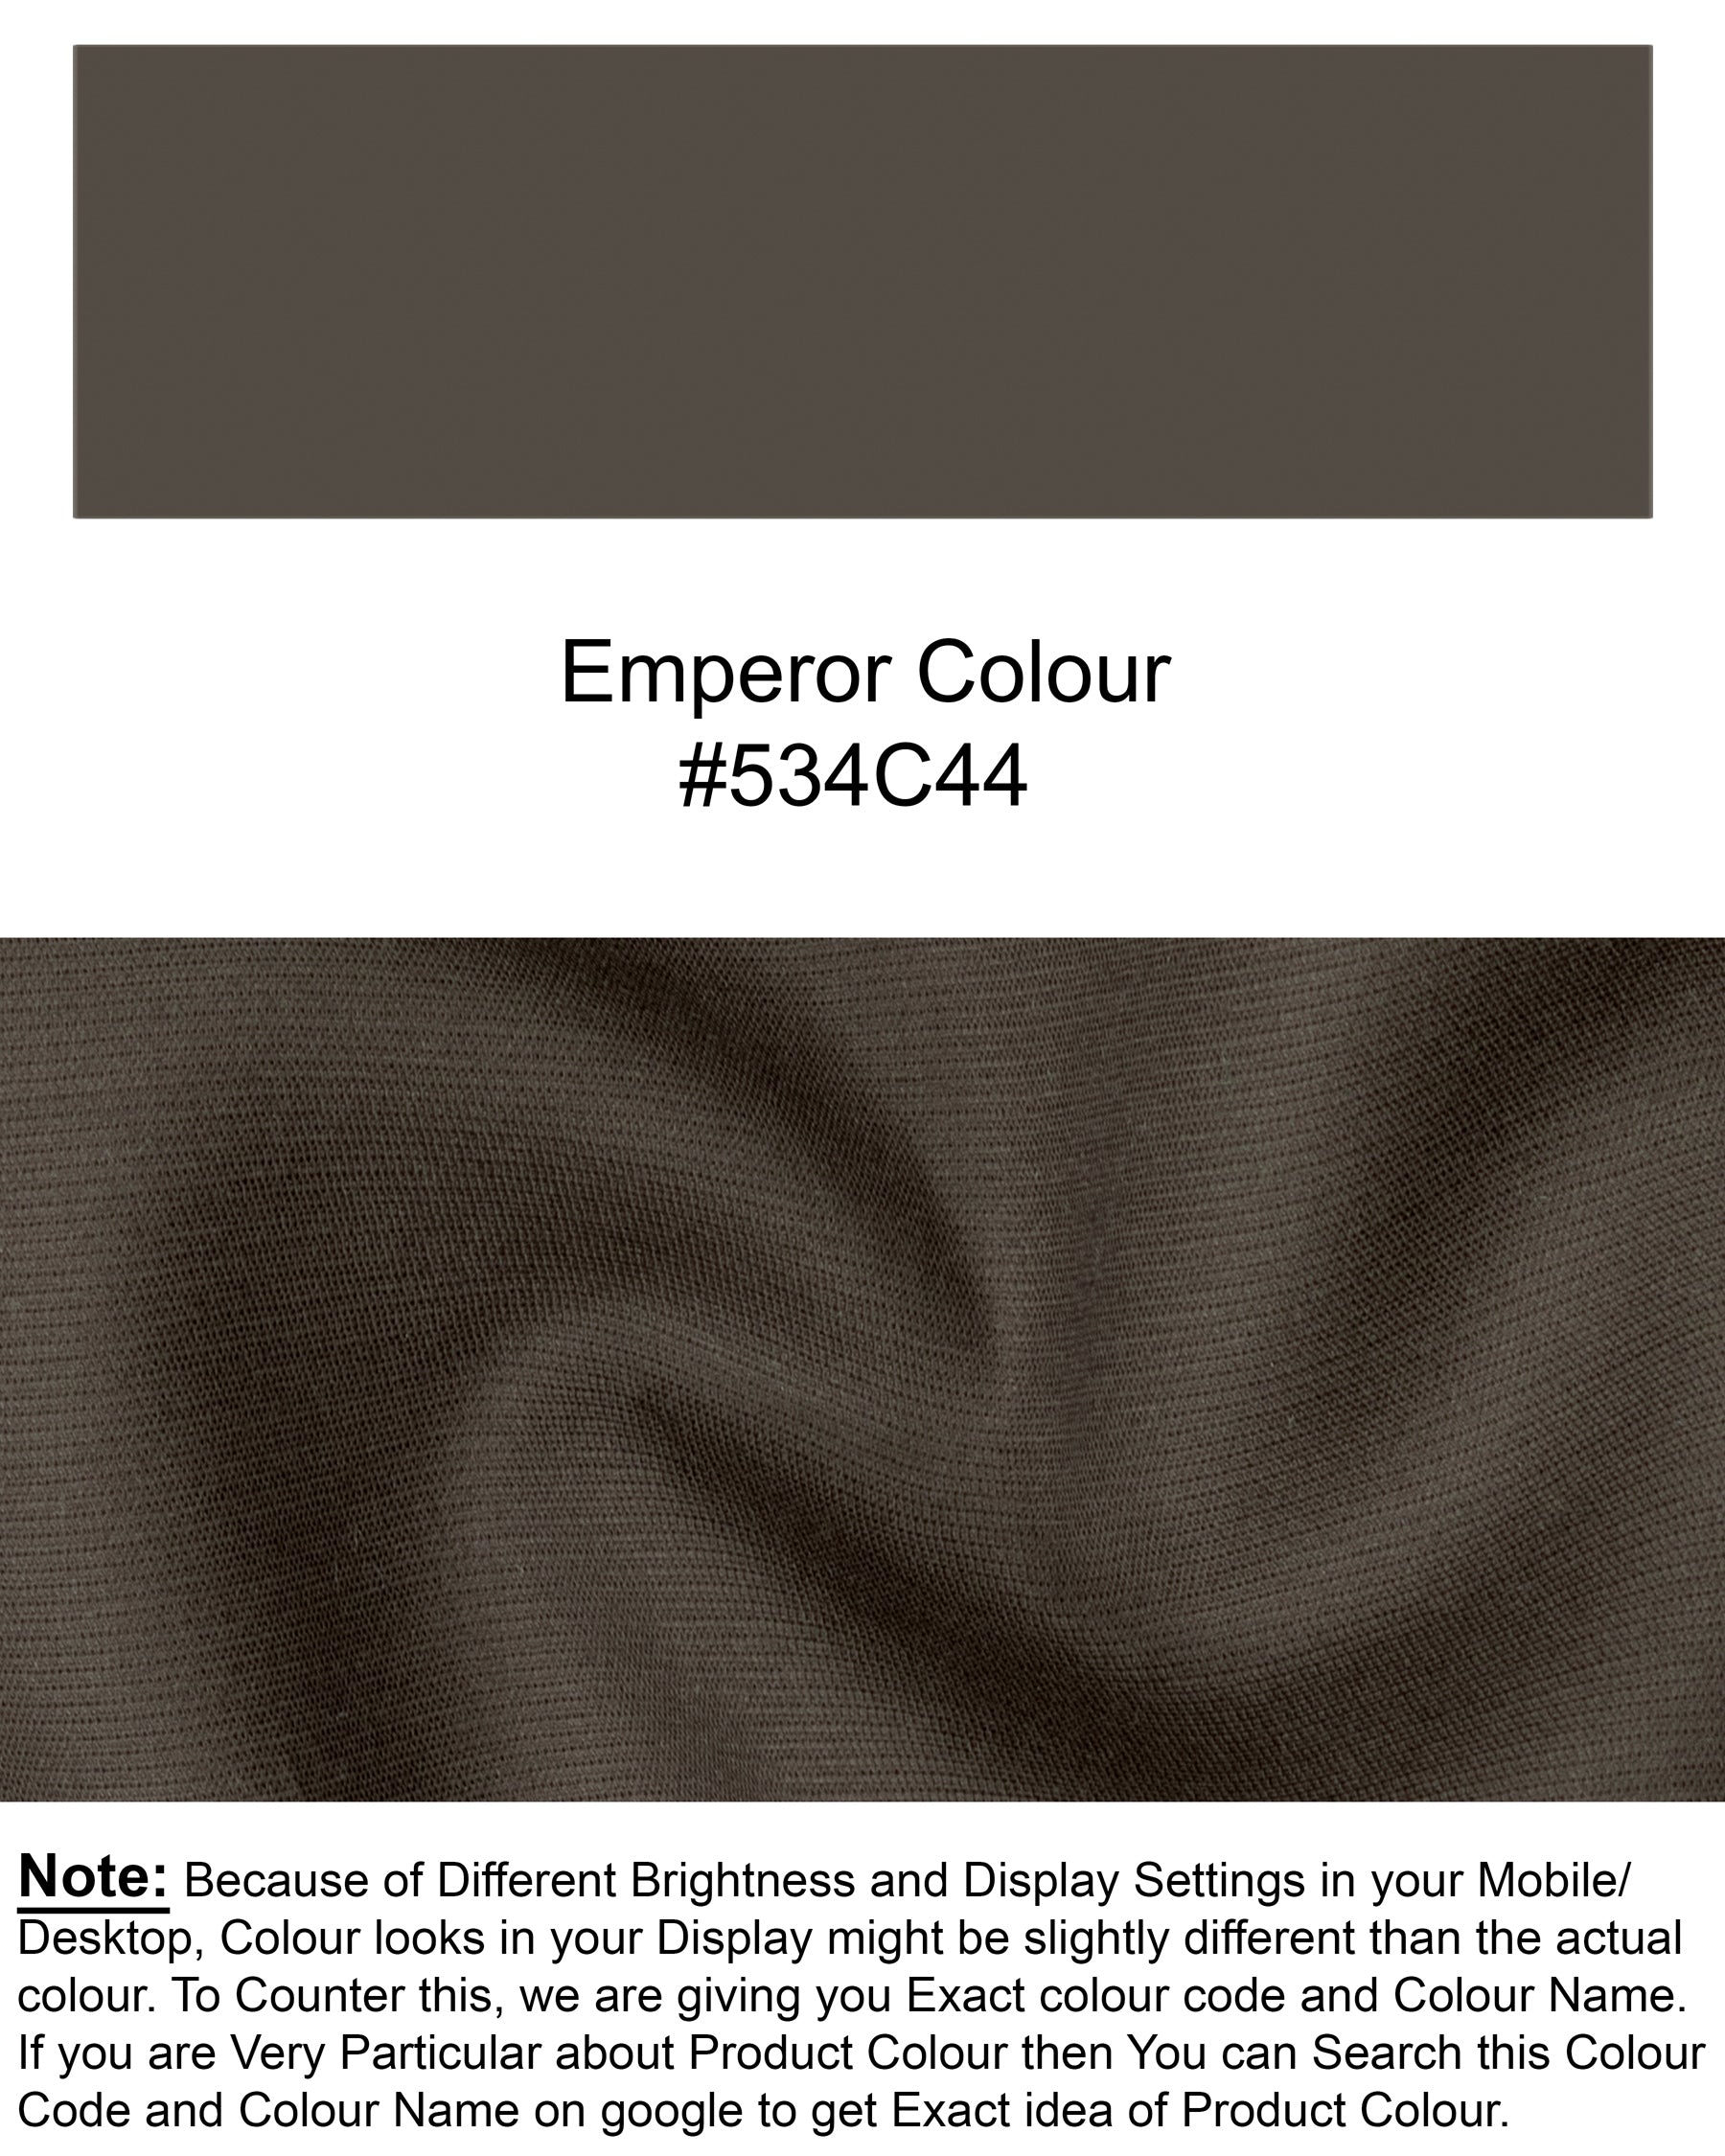 Emperor Brown Premium Cotton Suit ST1259-SBP-36, ST1259-SBP-38, ST1259-SBP-40, ST1259-SBP-42, ST1259-SBP-52, ST1259-SBP-44, ST1259-SBP-46, ST1259-SBP-48, ST1259-SBP-50, ST1259-SBP-54, ST1259-SBP-56, ST1259-SBP-58, ST1259-SBP-60